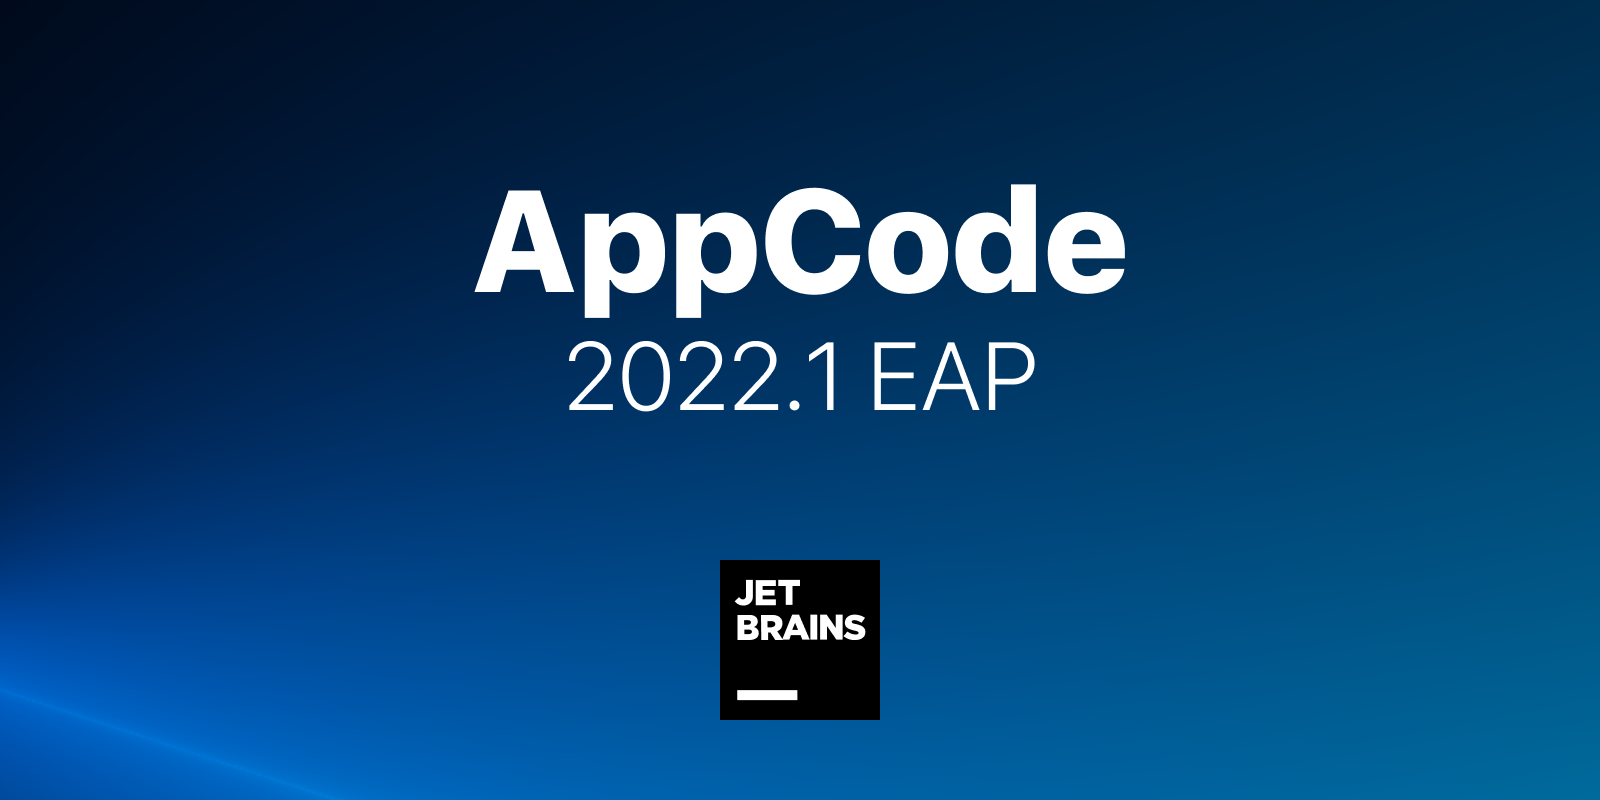 AppCode 2022.1